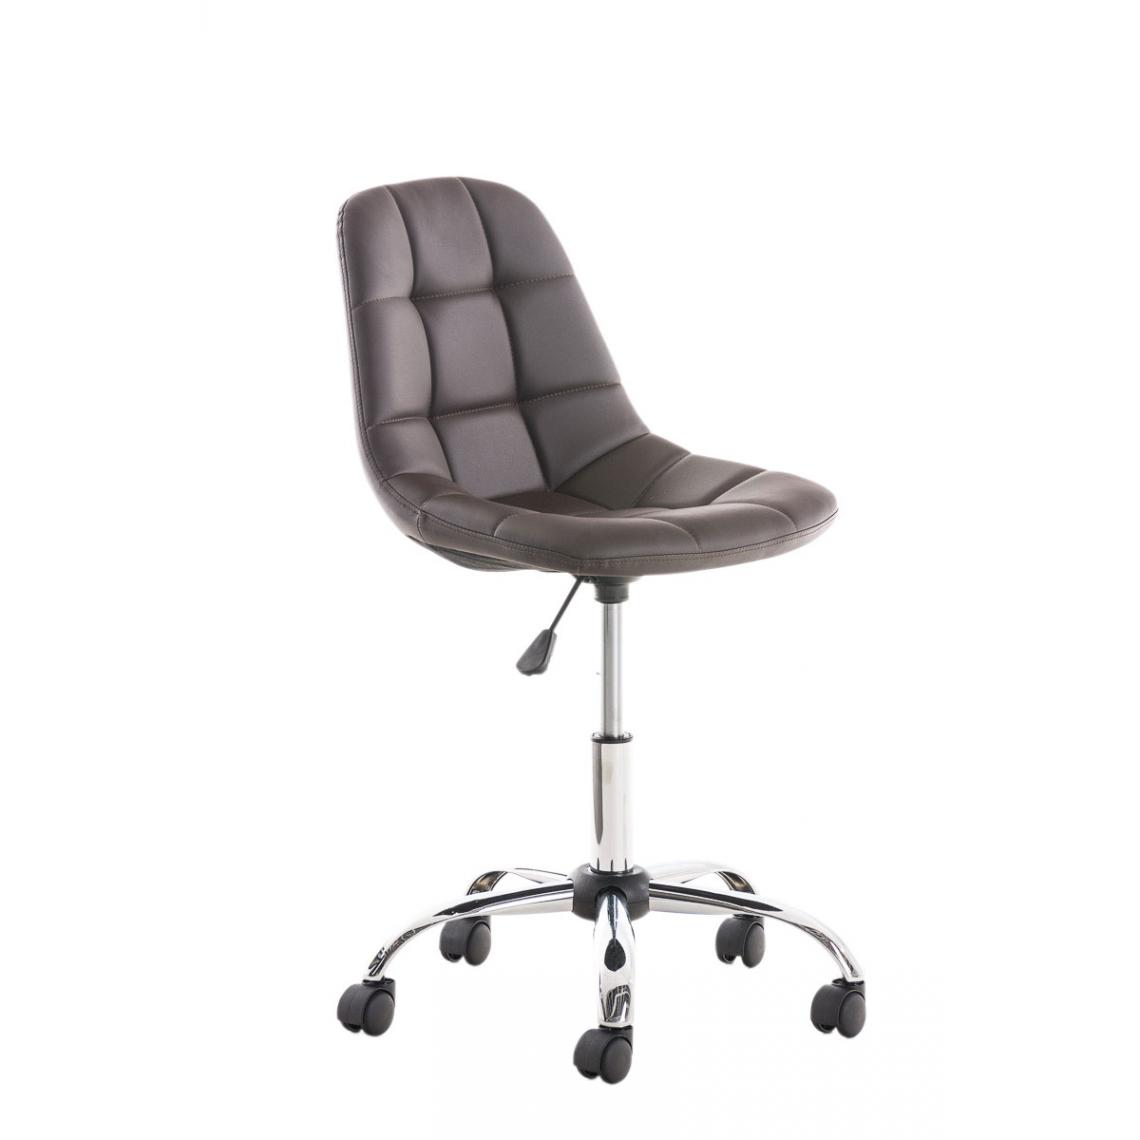 Icaverne - Admirable Chaise de bureau famille Sanaa en similicuir couleur marron - Chaises